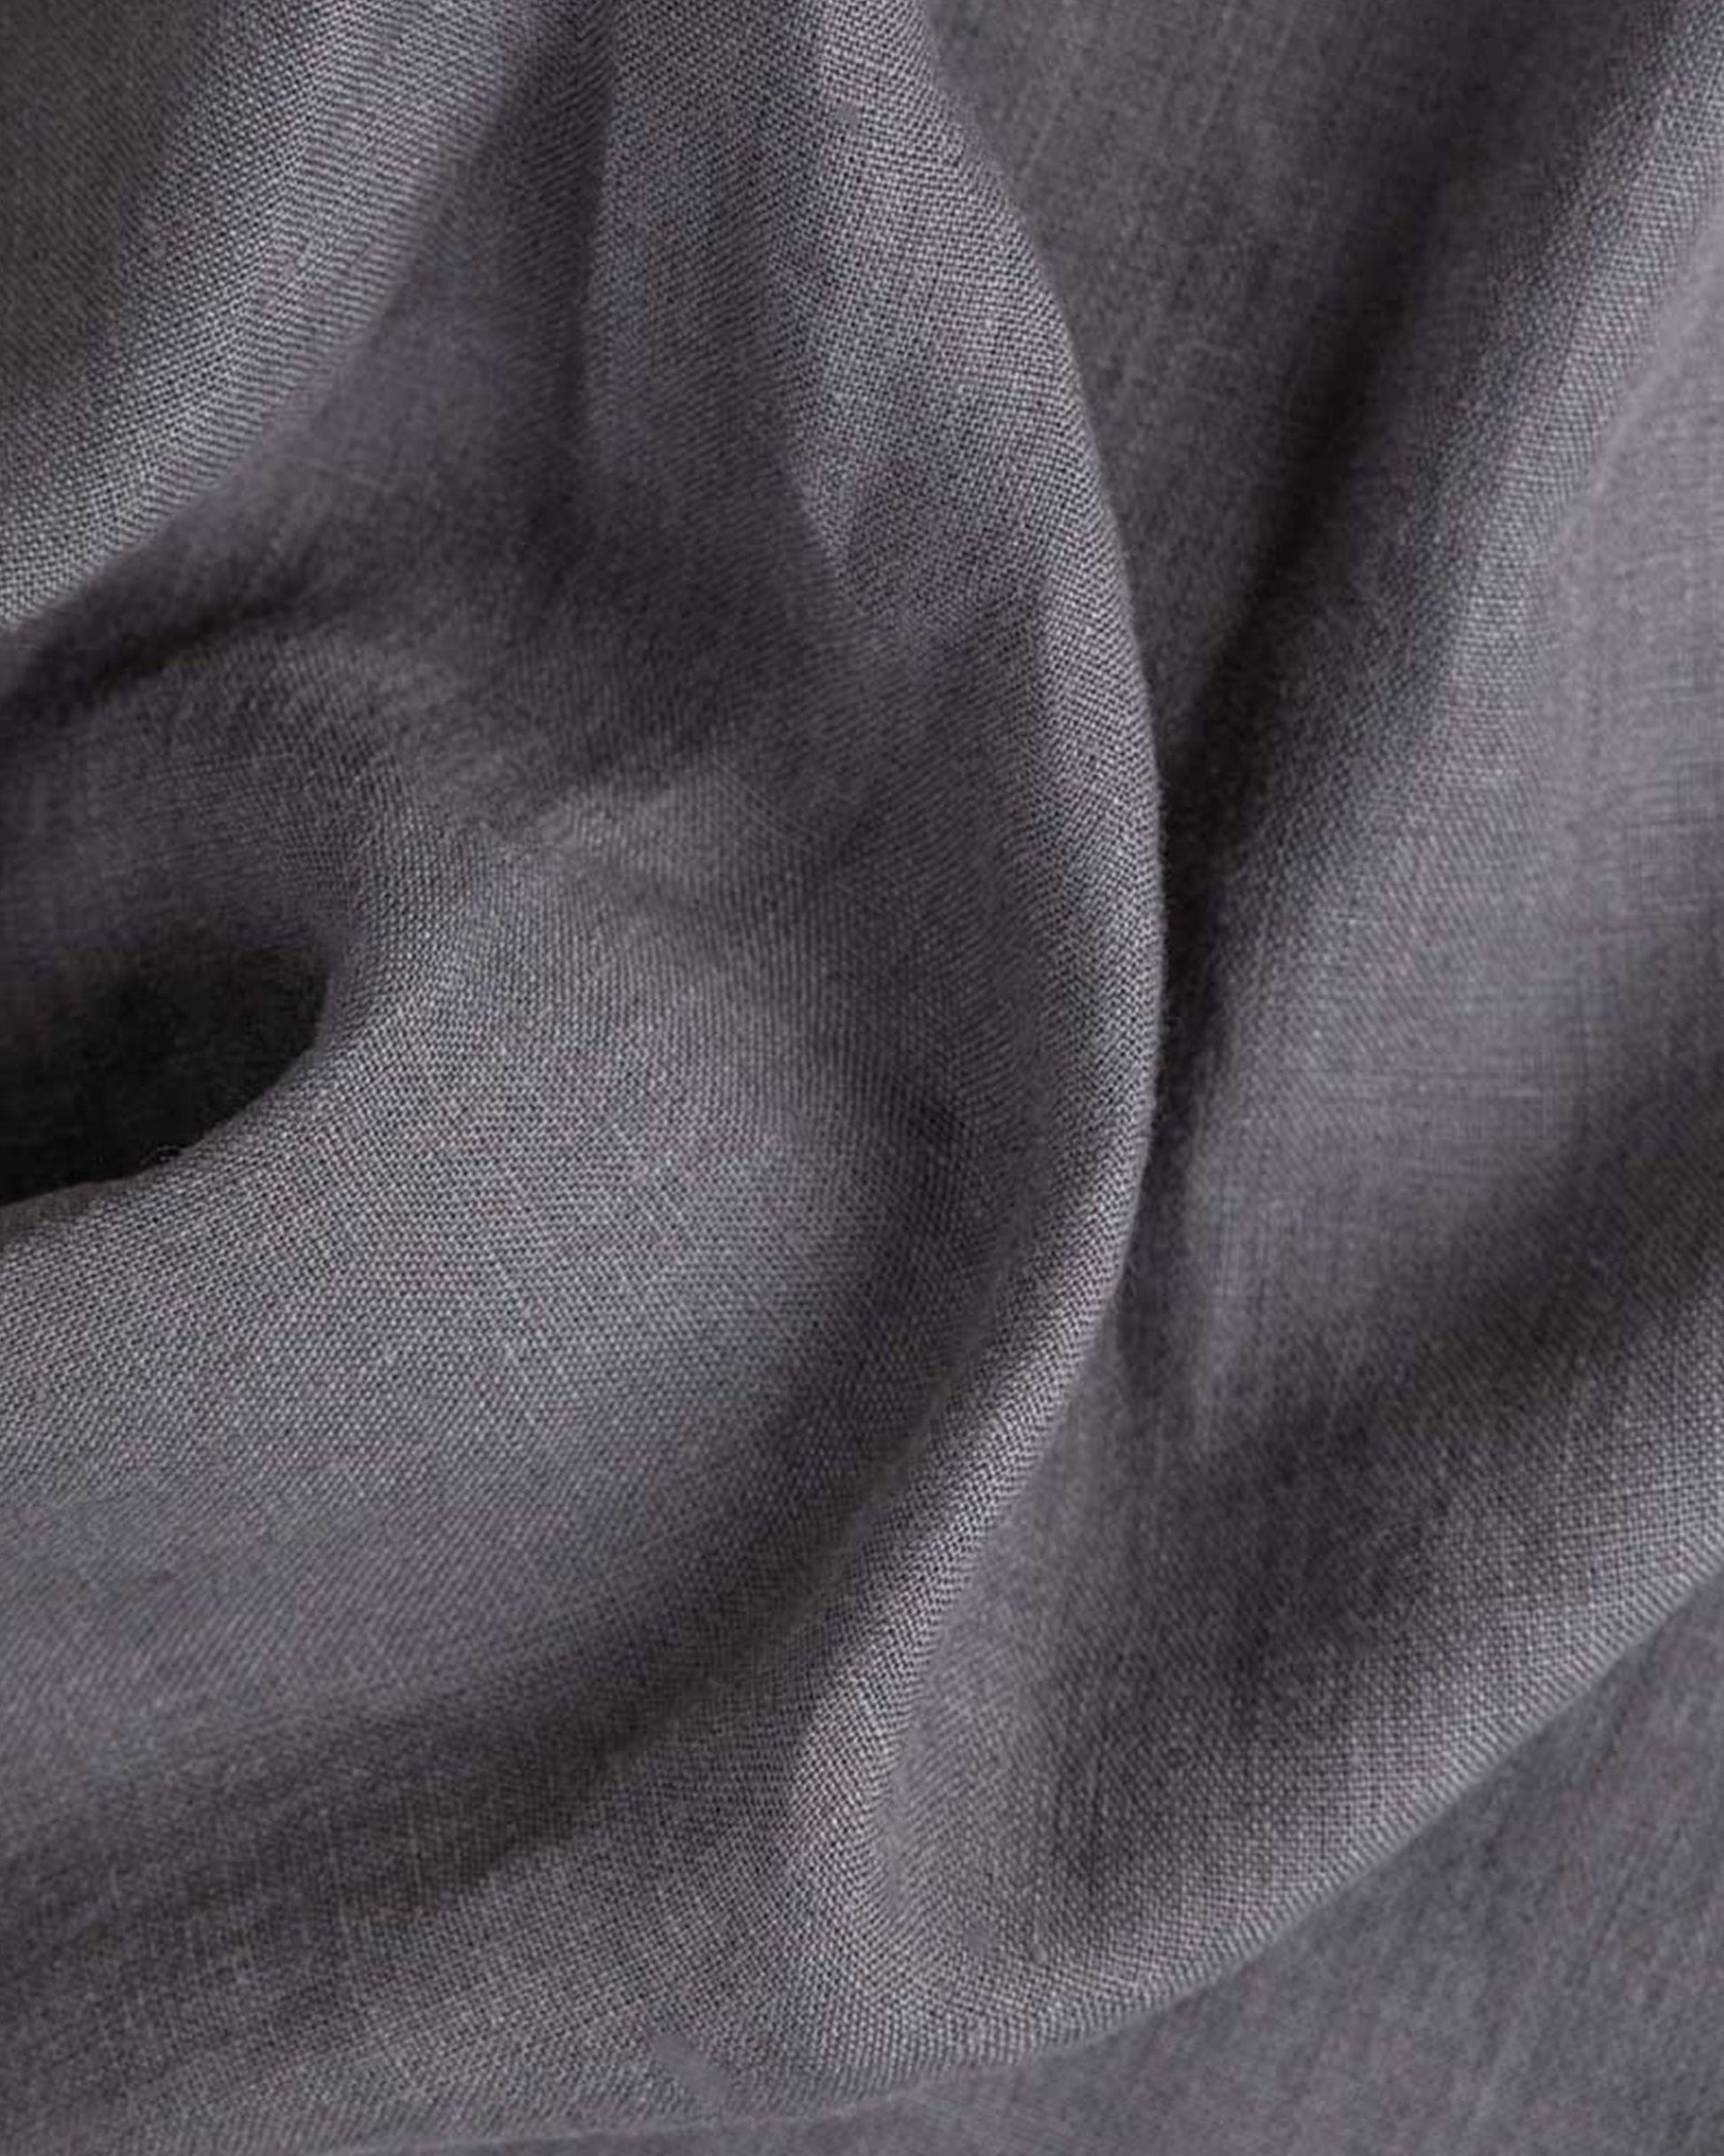 Charcoal gray linen flat sheet - MagicLinen